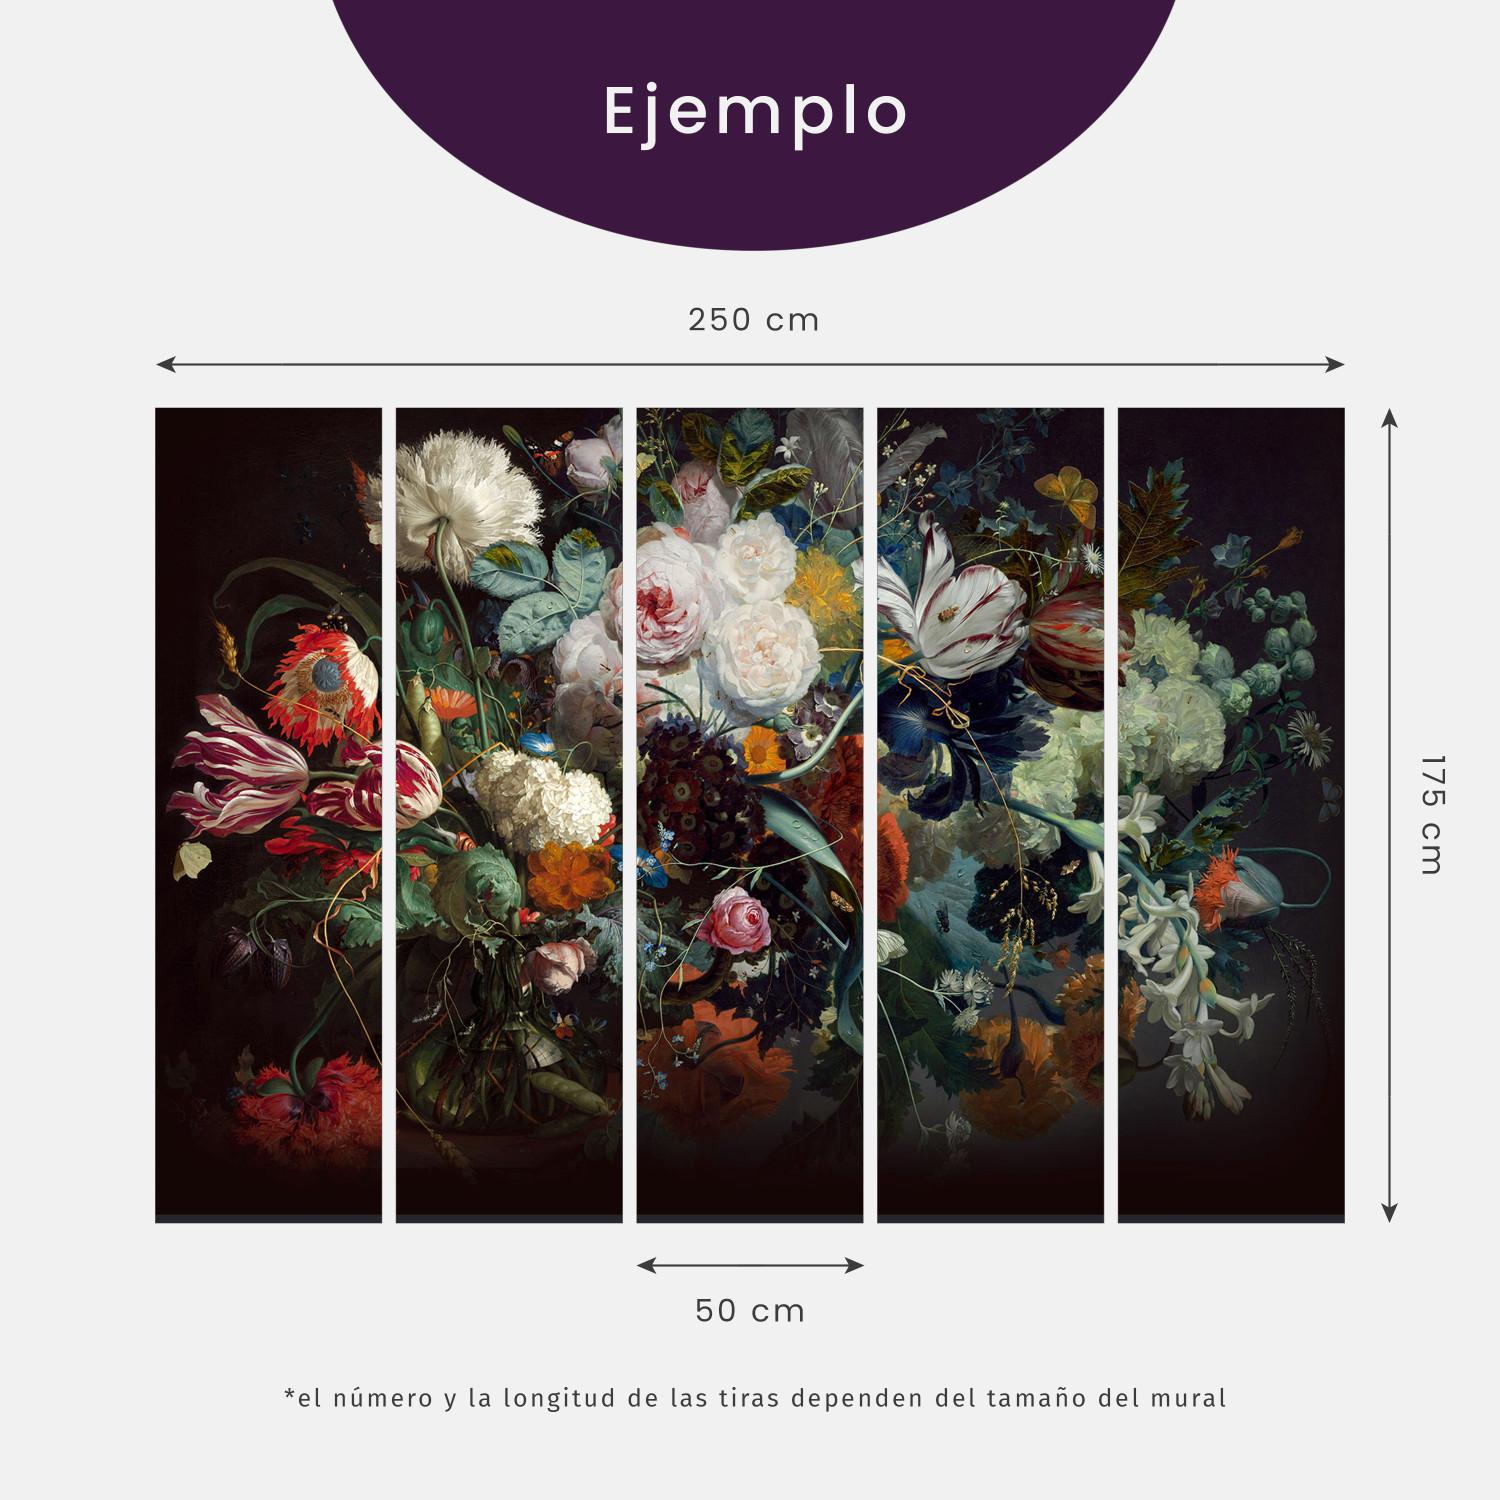 Fotomural Rincón exótico - una composición con flores, pájaros y una mariposa